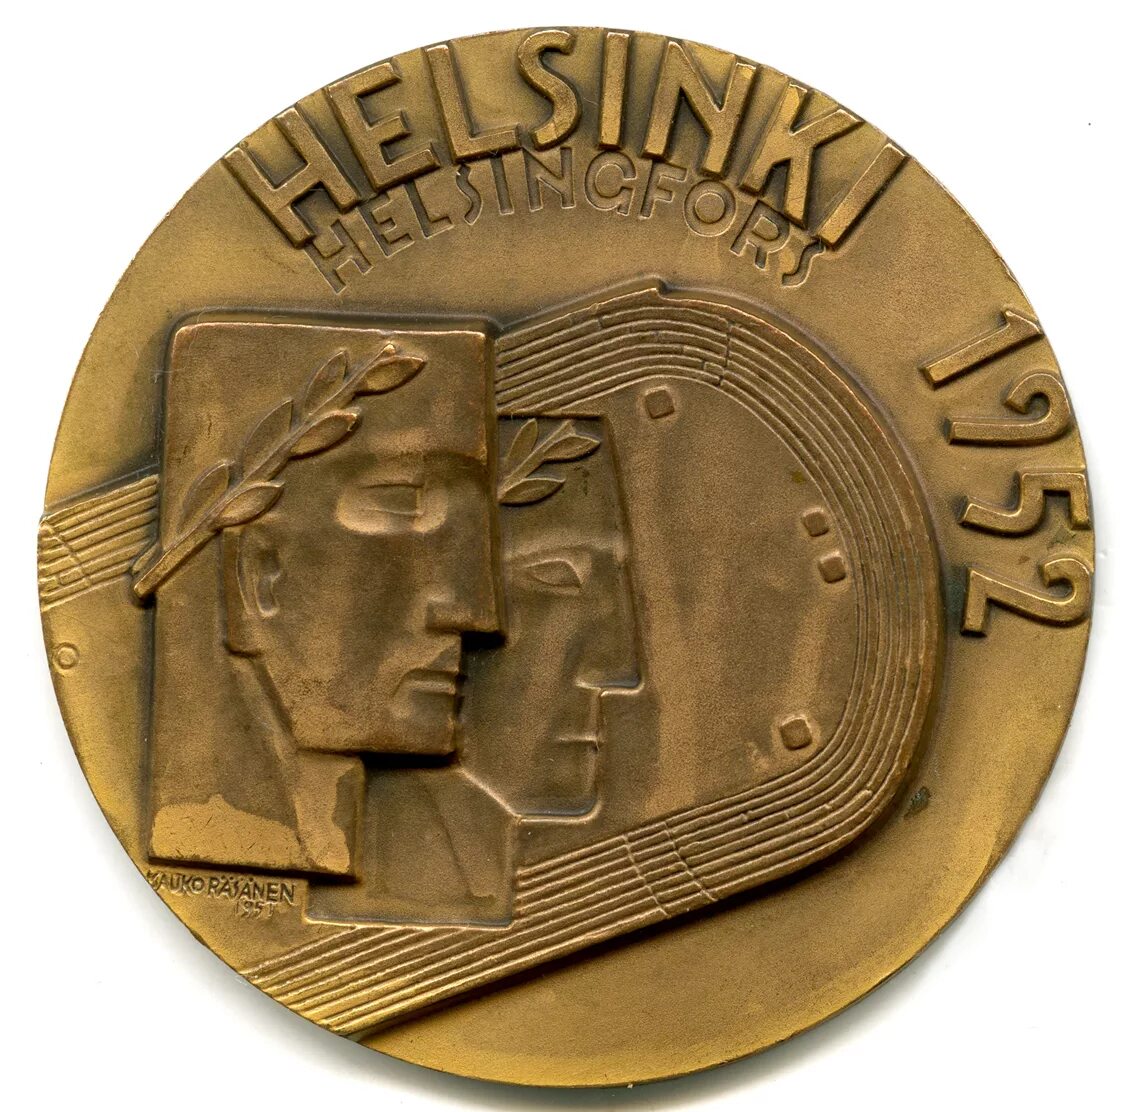 Медаль Хельсинки 1952. Медали СССР Хельсинки 1952. Олимпийские игры 1952 года в Хельсинки медали. Олимпийская медаль 1952.